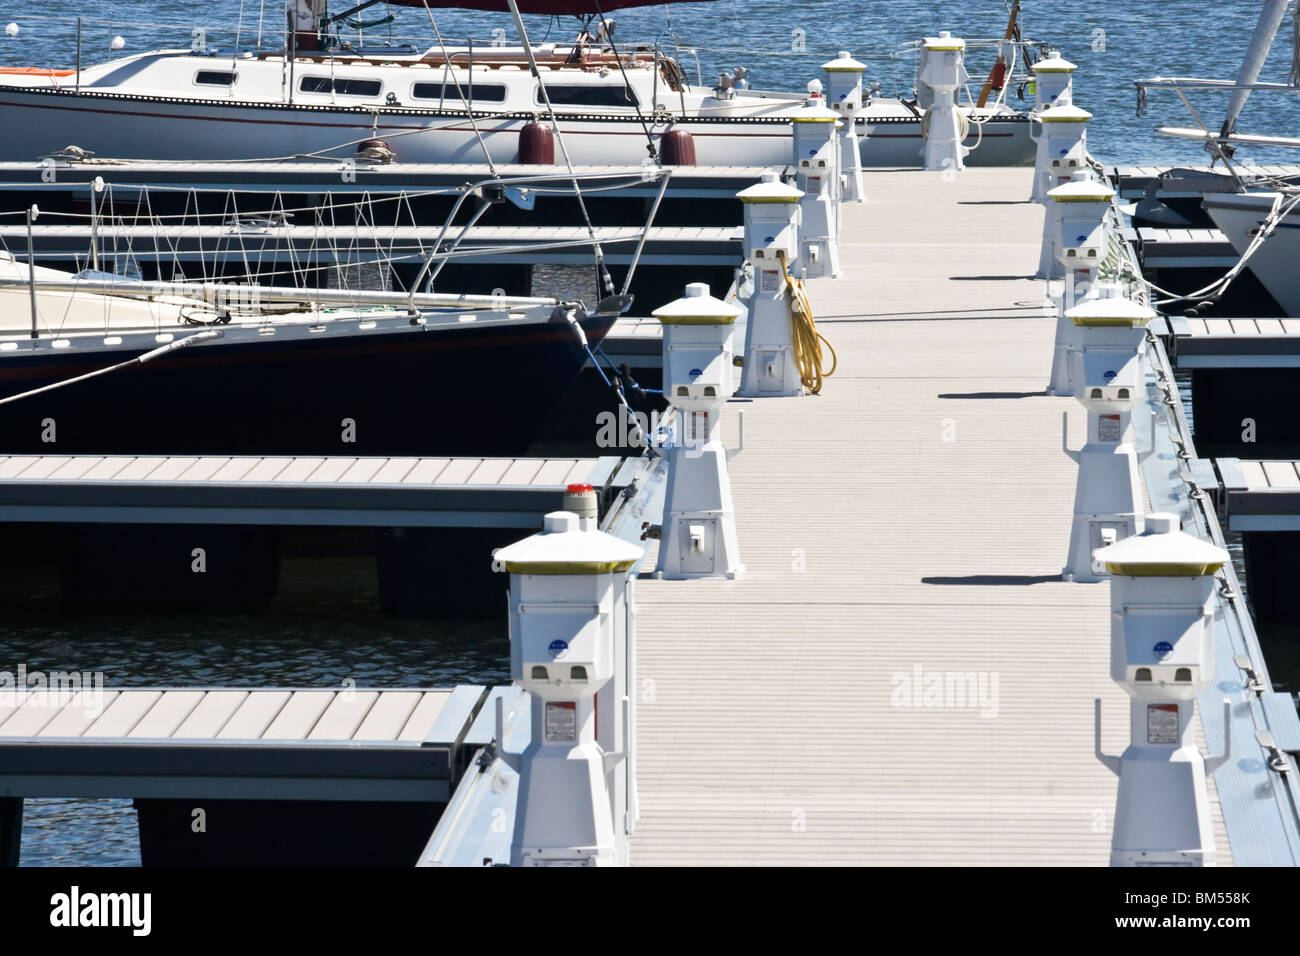 Sailboats Docked at the yacht club on Lake Ontario, Oswego NY Stock Photo